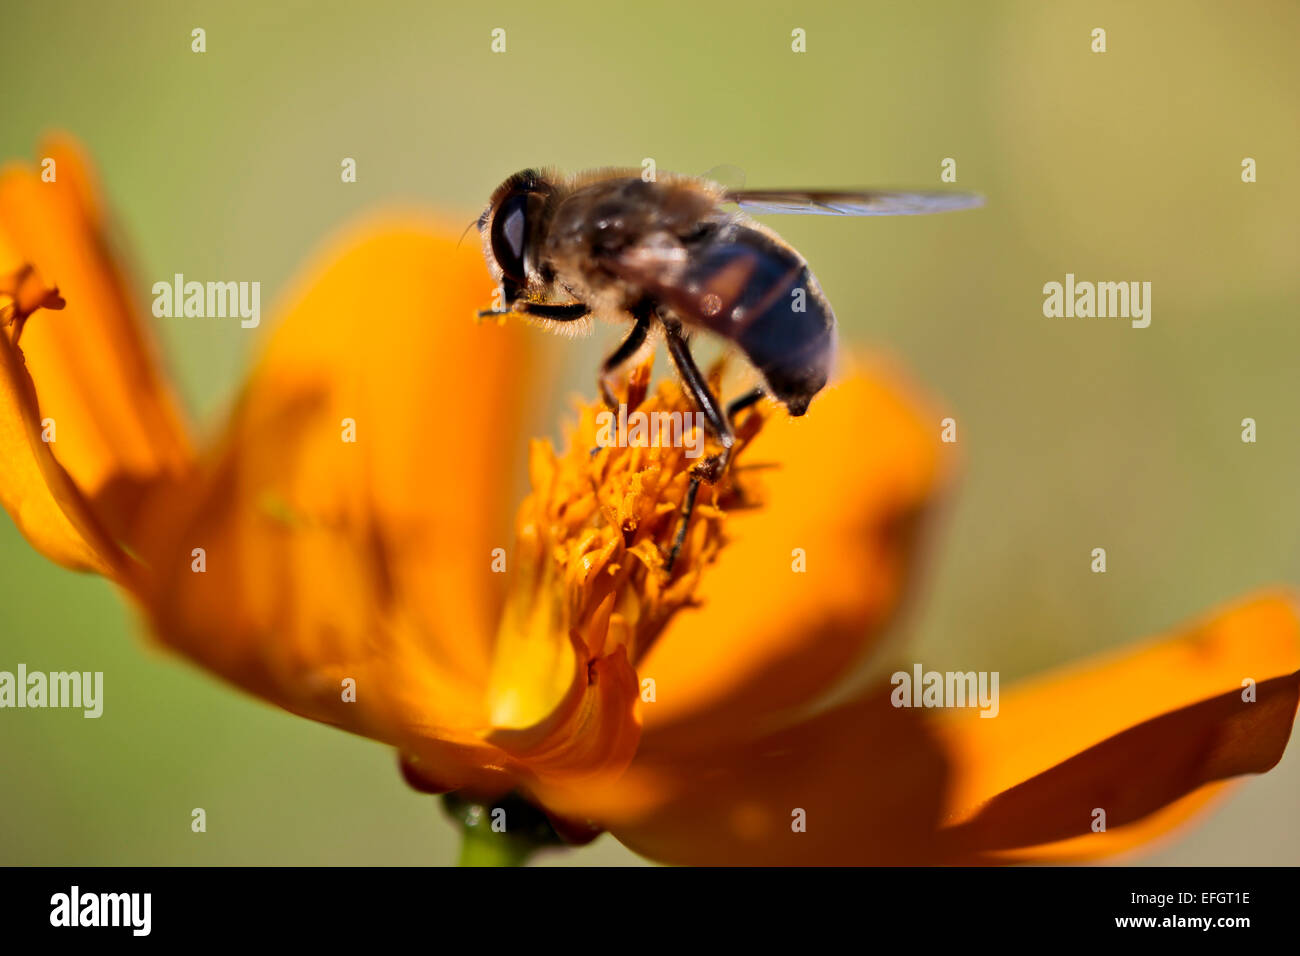 Honeybee collecting pollen from flower of Cosmos sulphureus Stock Photo